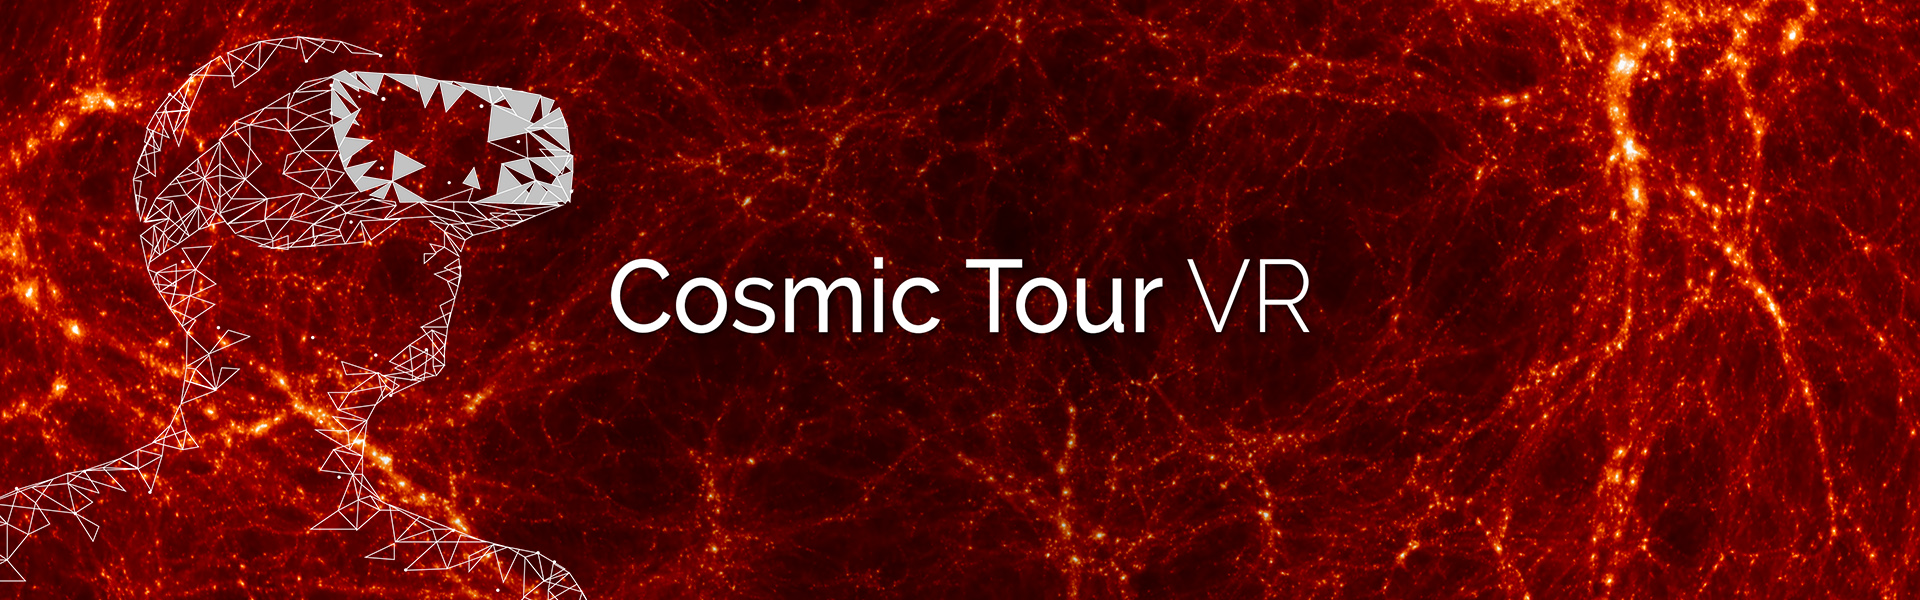 bandeau pour notre production Cosmic Tour VR